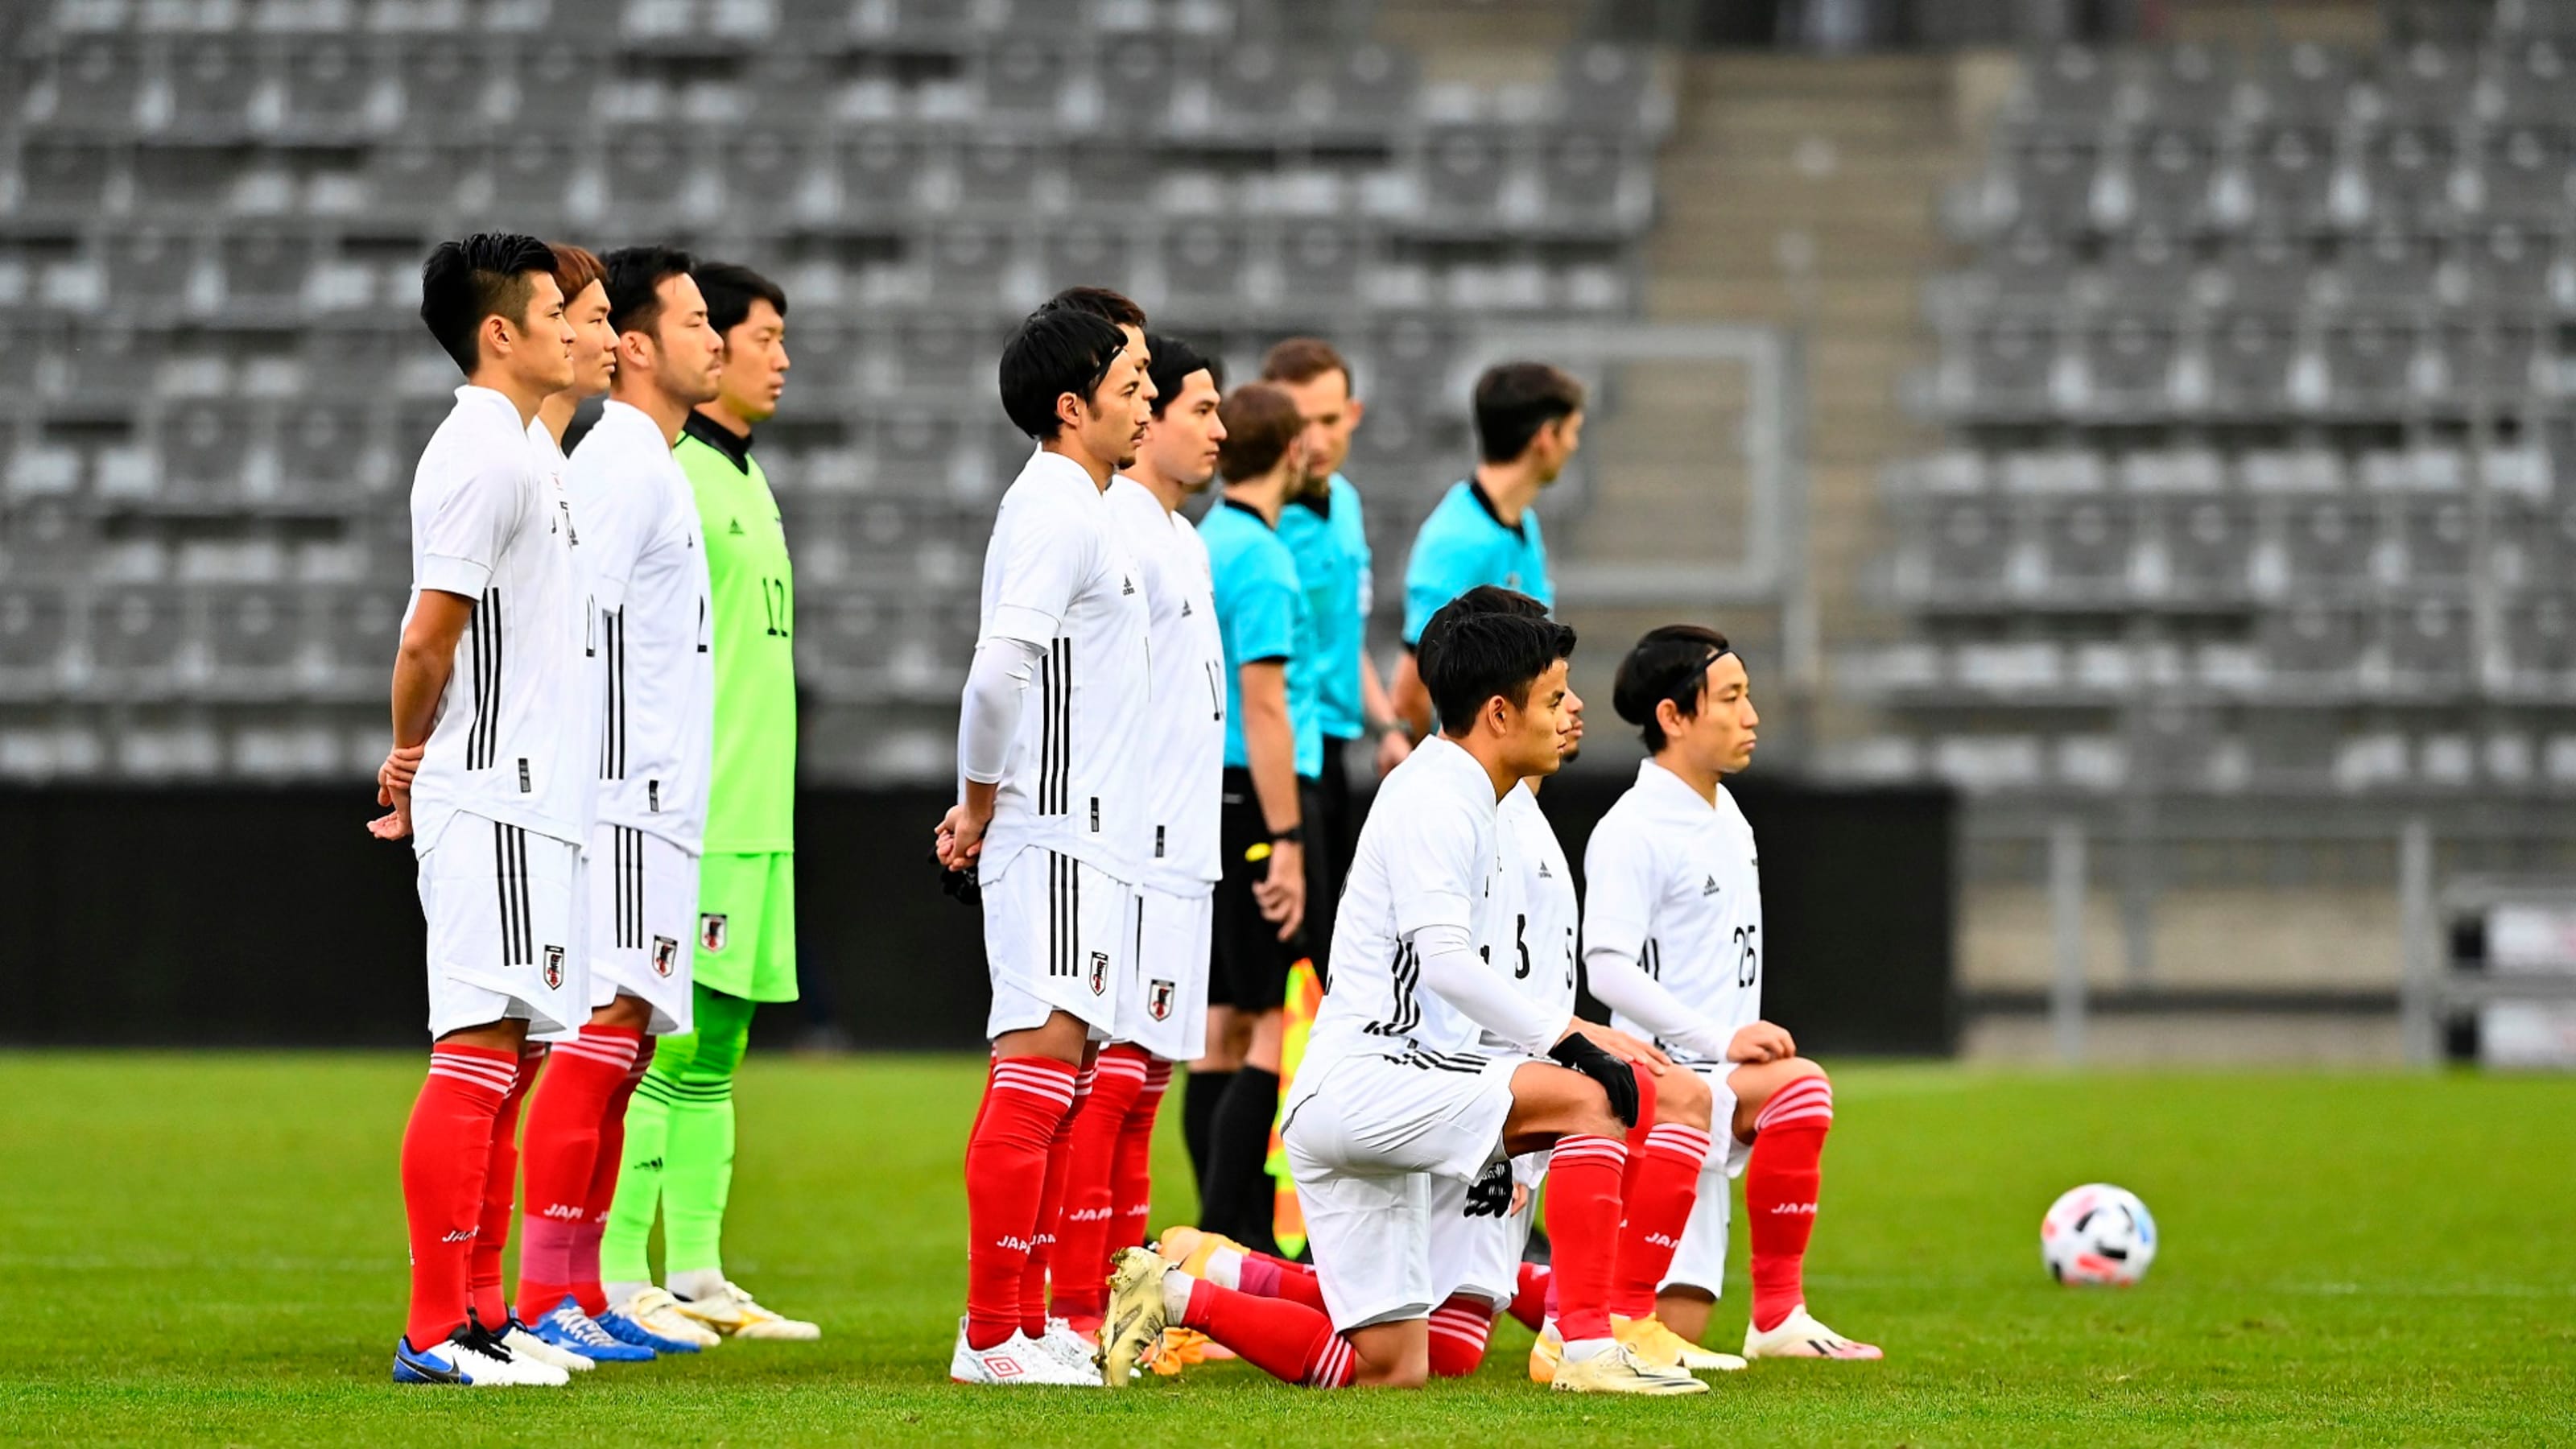 サッカー 最新のfifaランキングが発表 日本は27位のまま変わらずアジア最上位